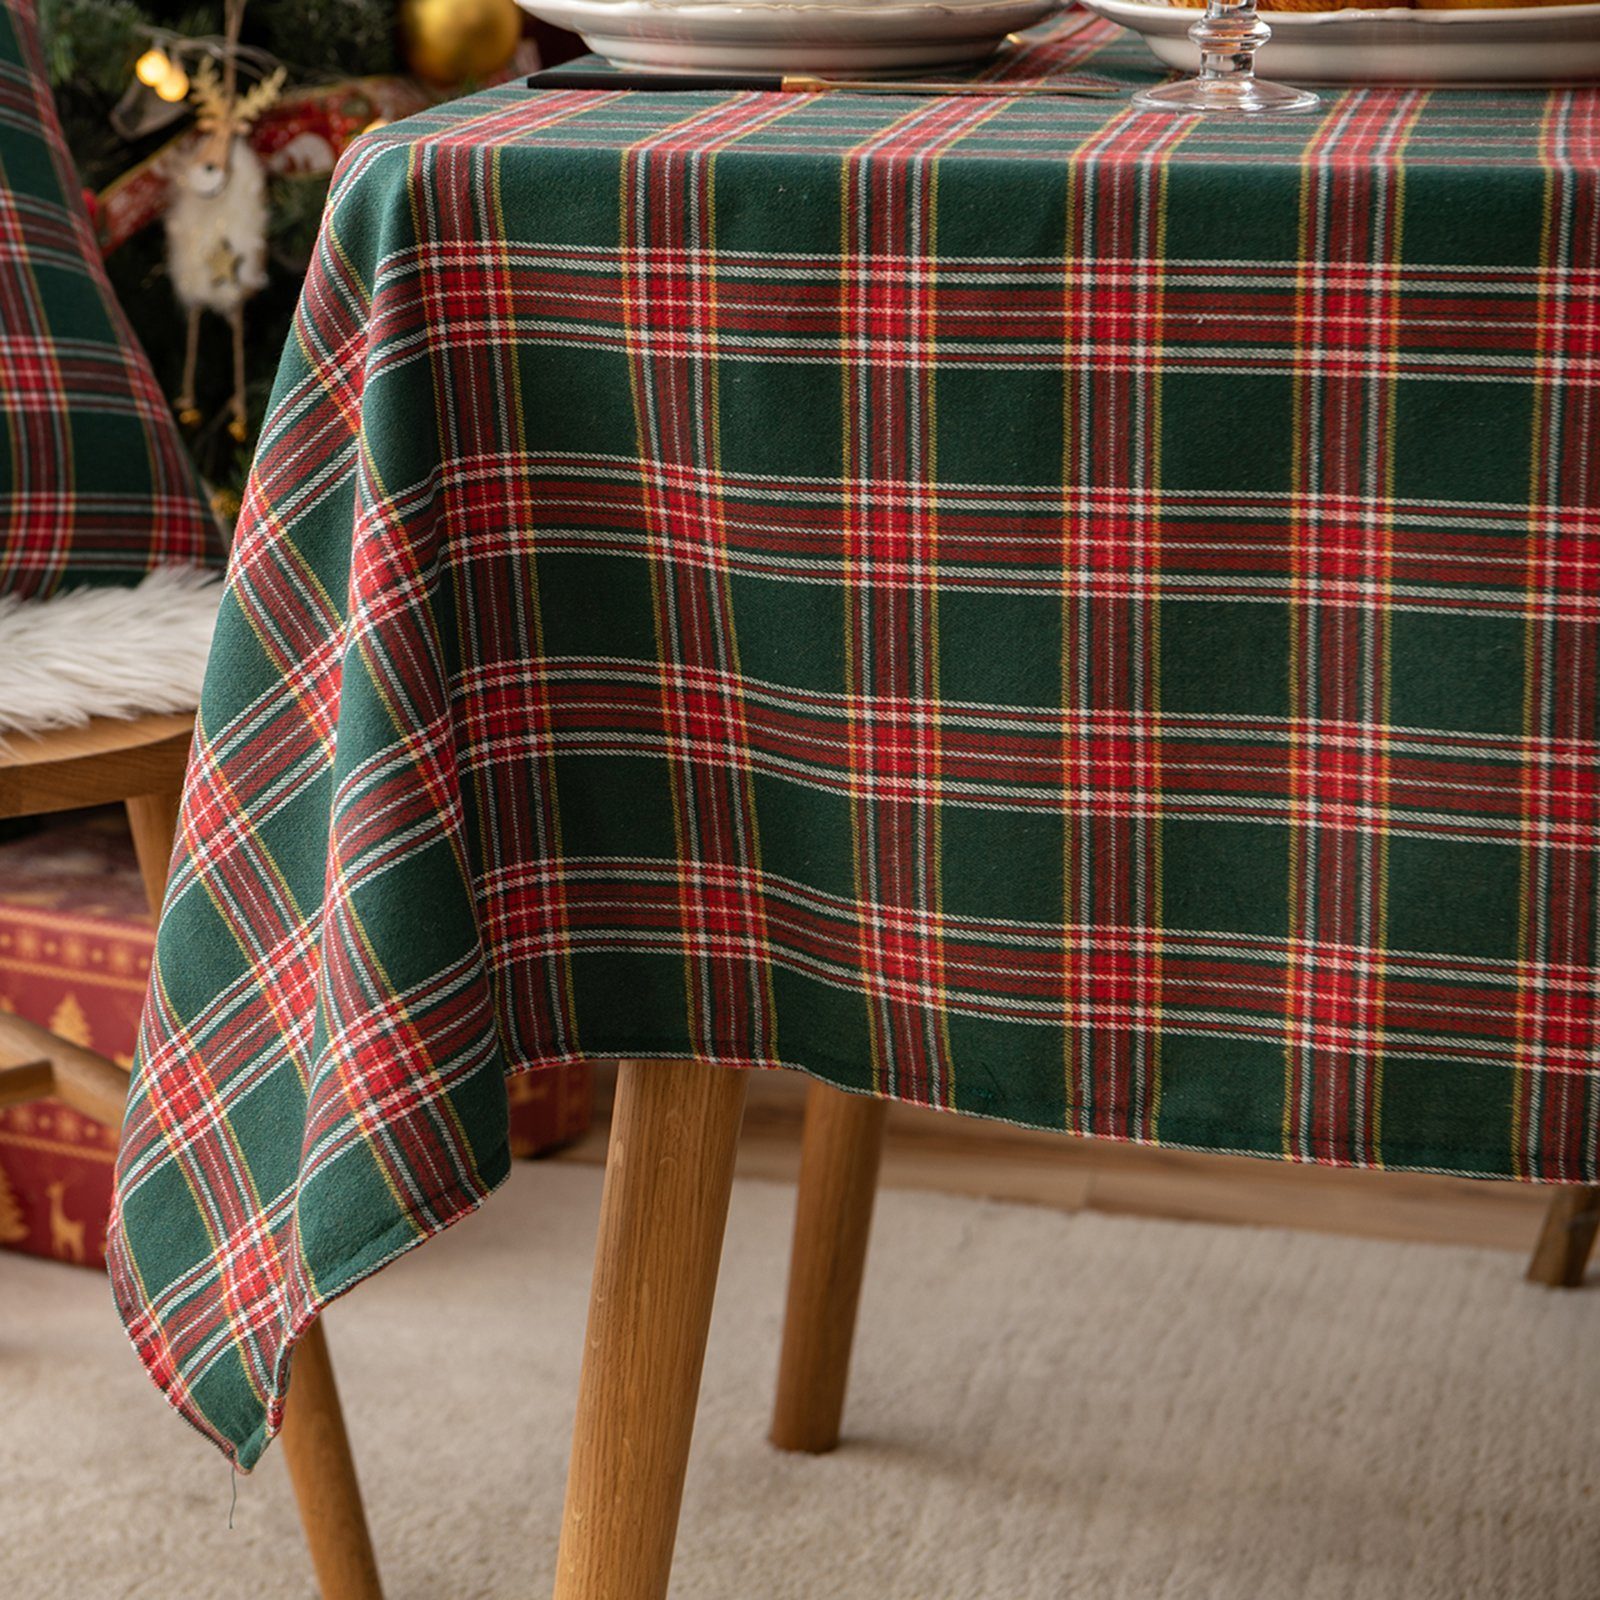 Tischläufer Tischdecke Qelus Weihnachten Rot&Grün Partydekoration Tischdecke Karierte